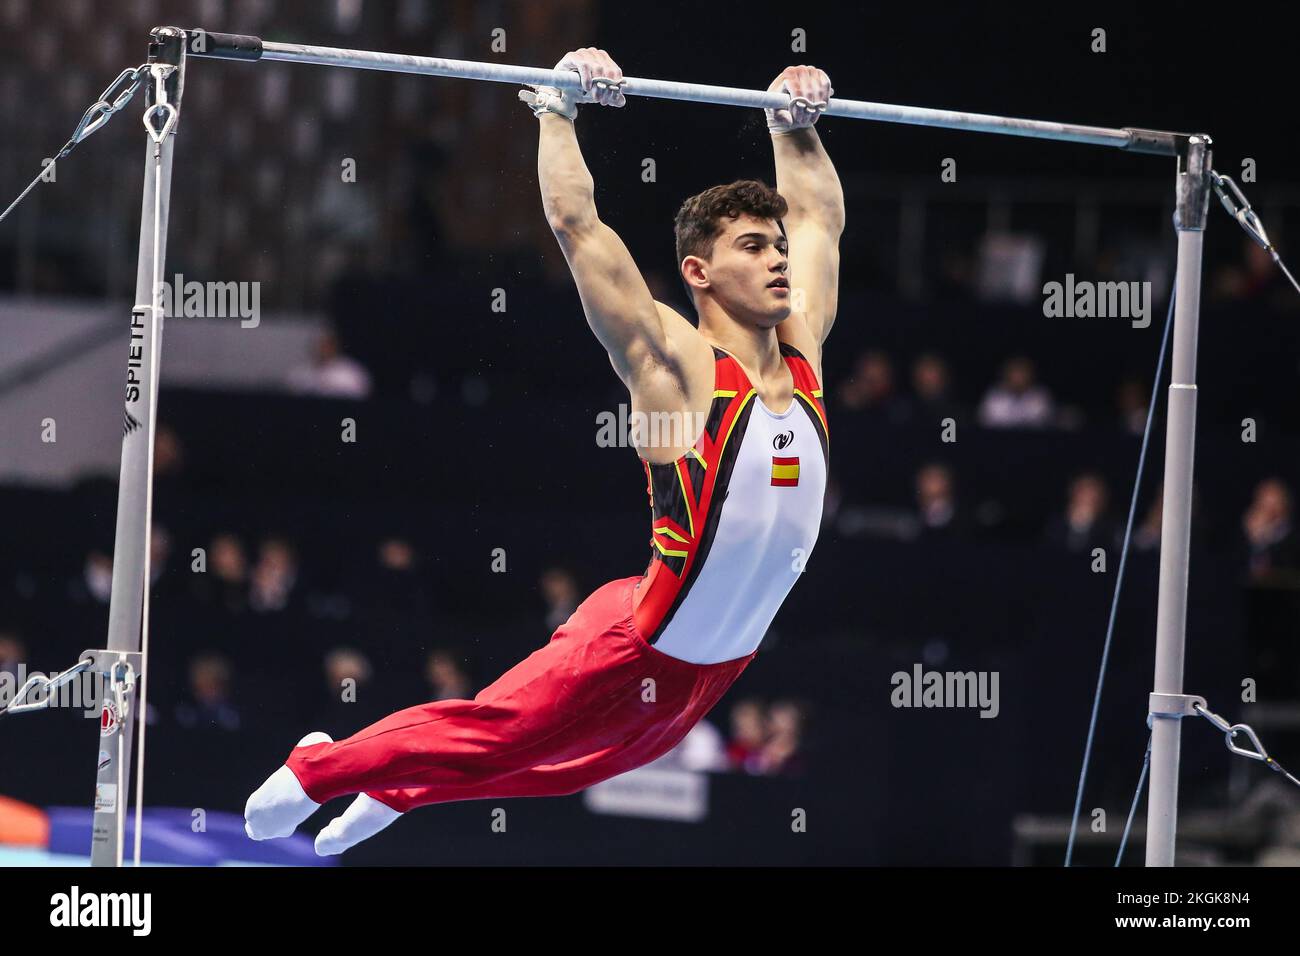 Szczecin, Poland, April 10, 2019:male athlete Mir Nicolau of Spain competes on the horizontal bar Stock Photo